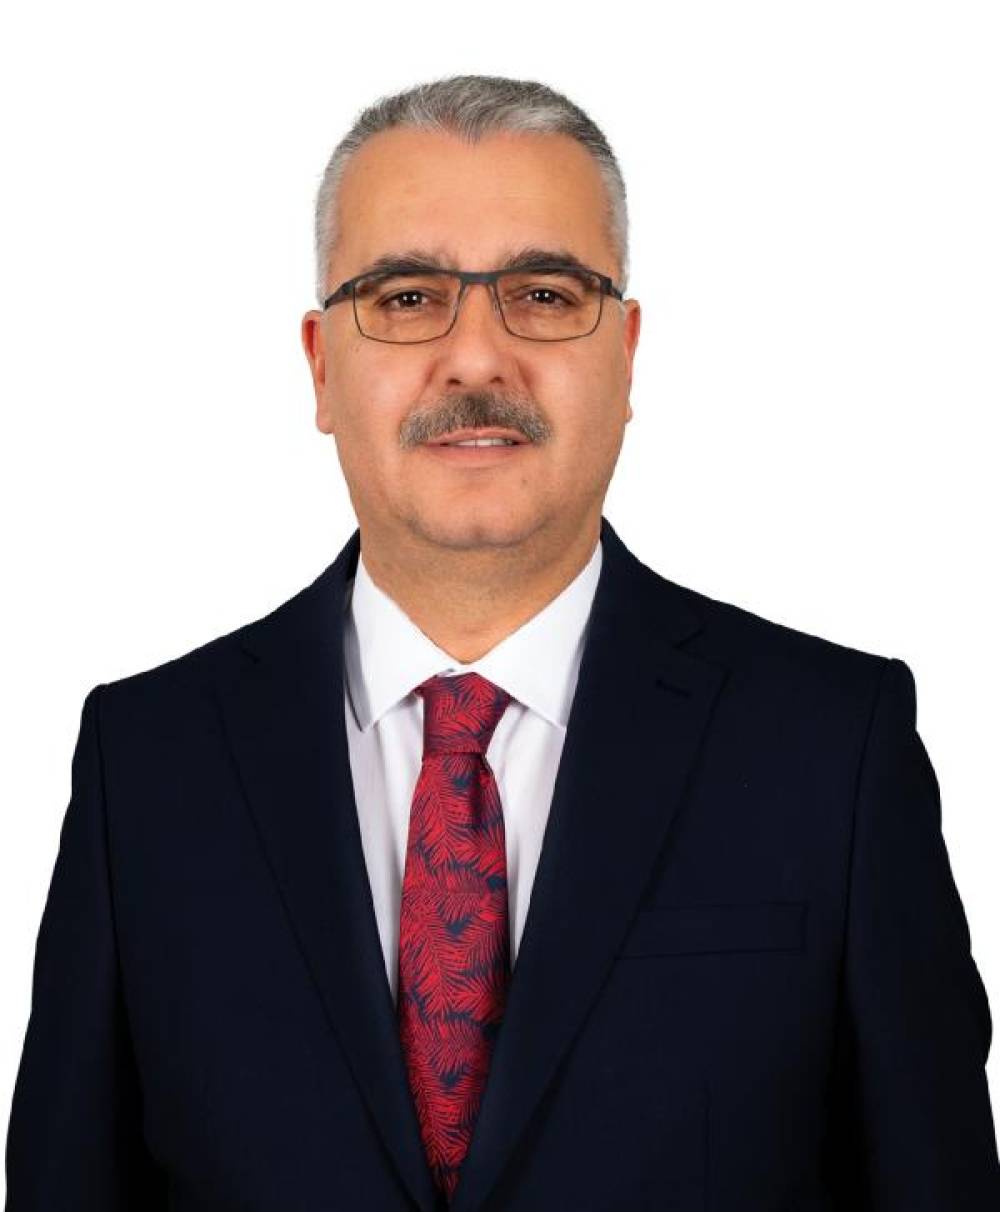 Çorum’da AK Parti 2, MHP ve CHP 1'er milletvekili çıkardı